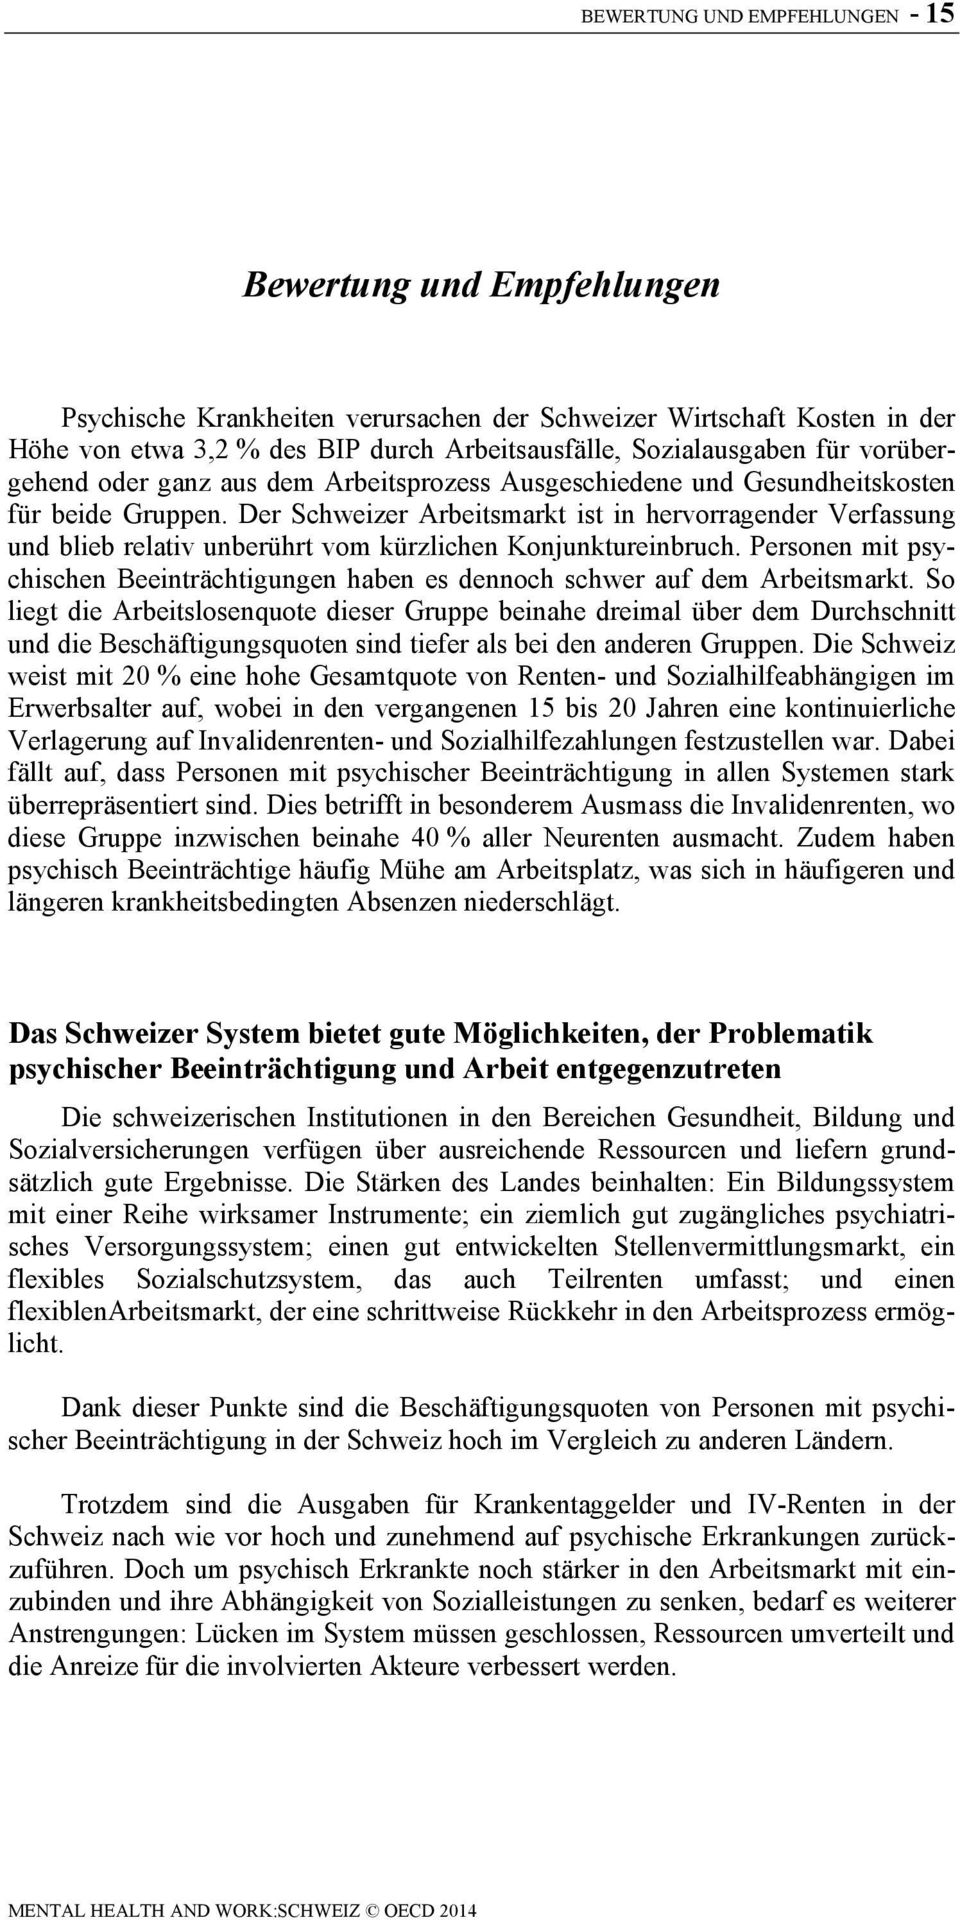 Psychische Gesundheit und Beschäftigung: Schweiz - PDF Free Download